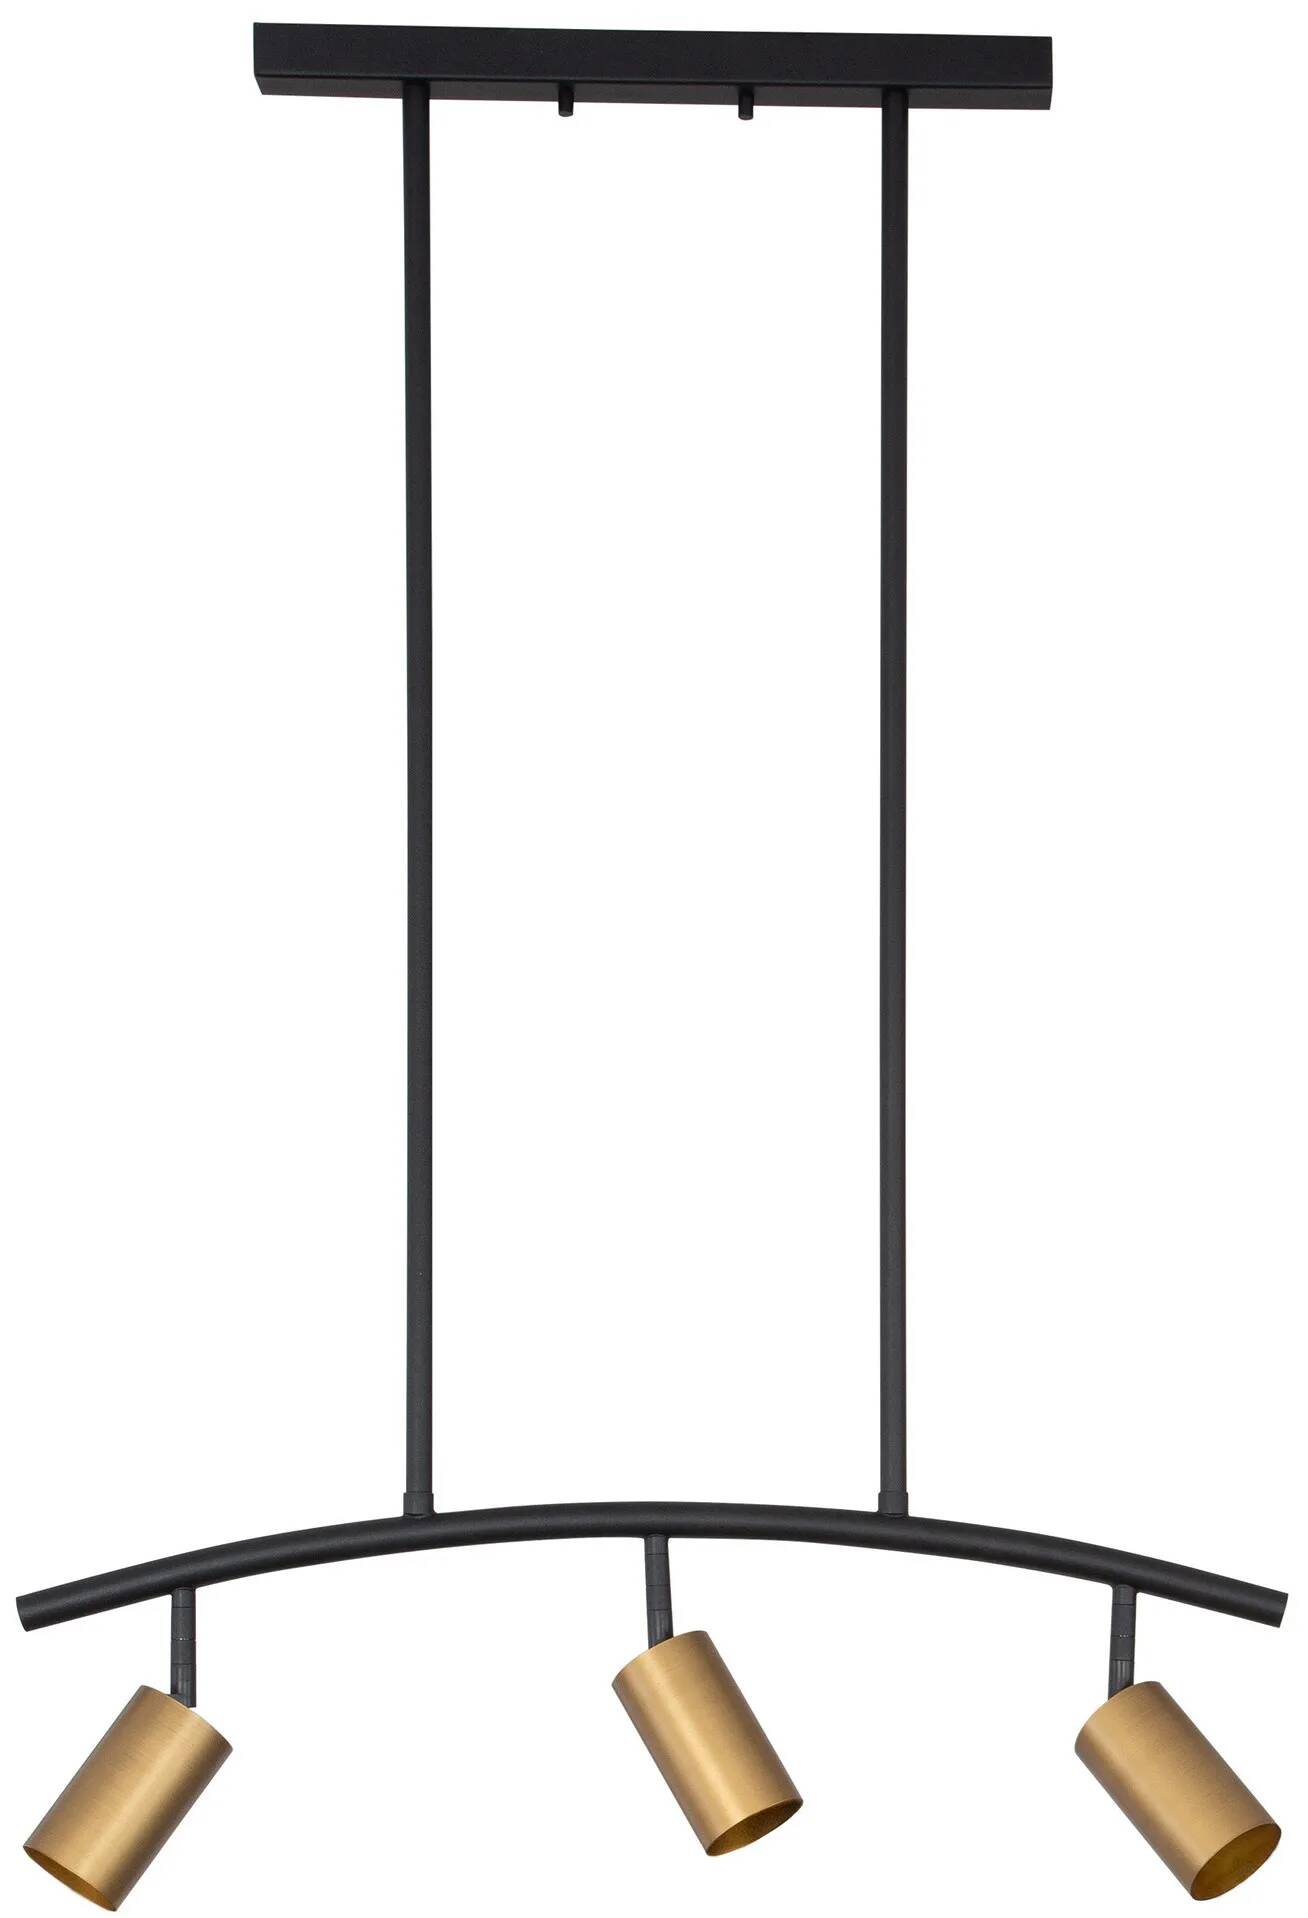 Lampe suspension à LED en aluminium noir et doré L72